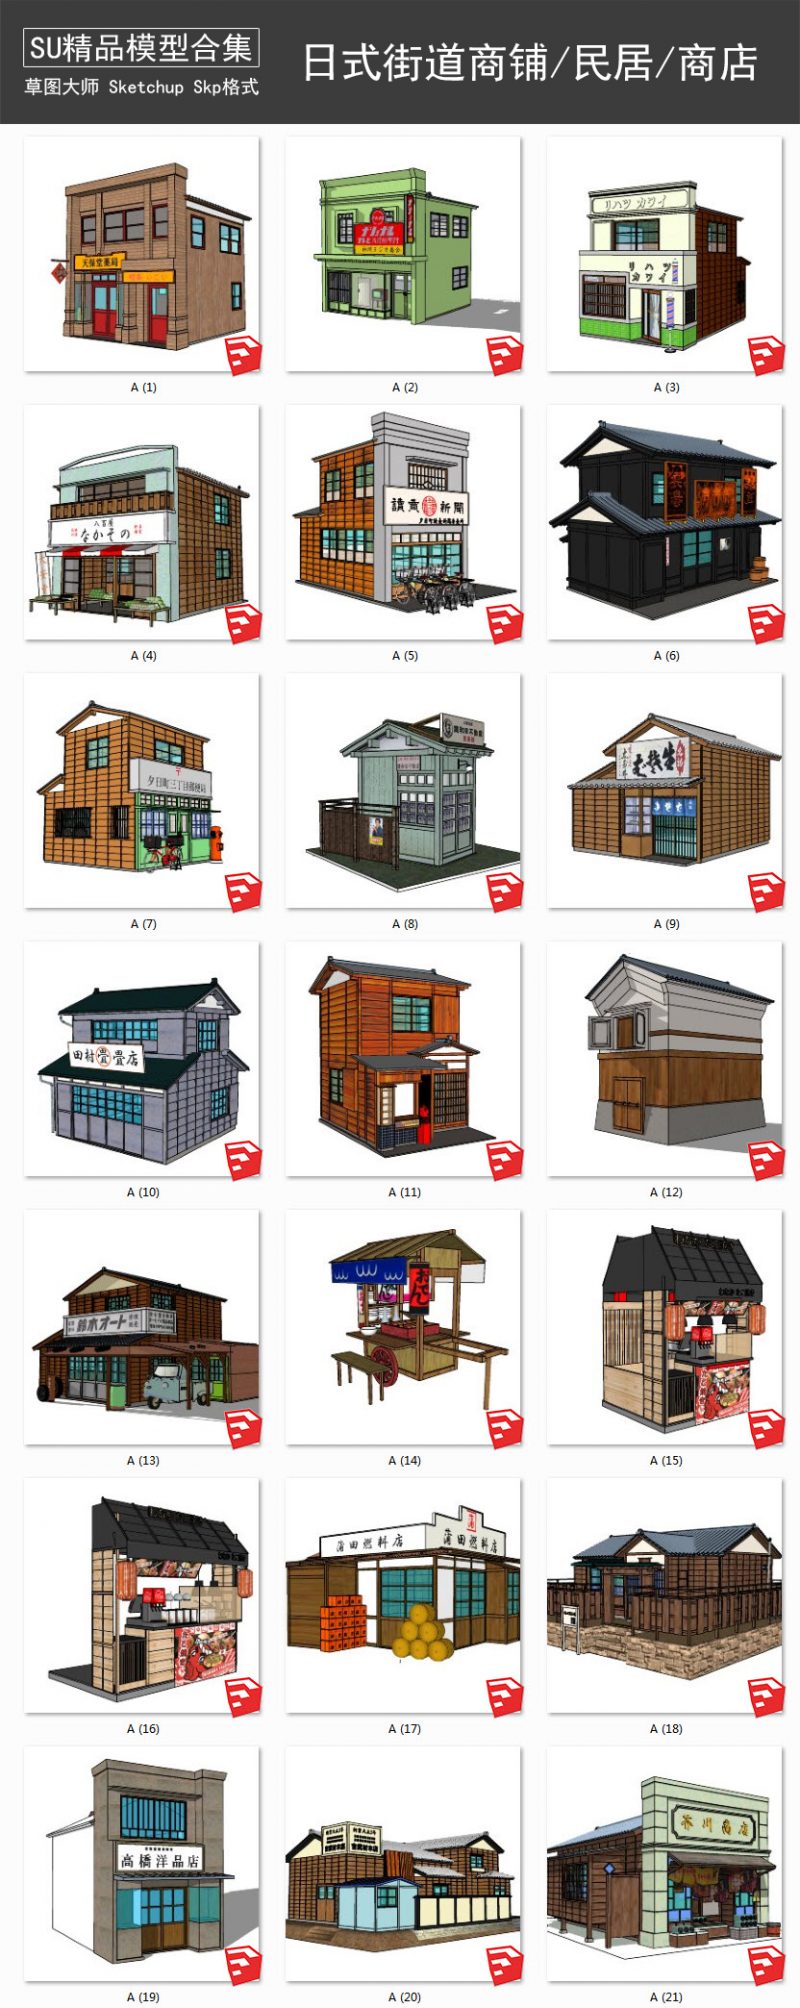 日式街道商铺丨传统建筑丨木屋民居丨商店 SU模型